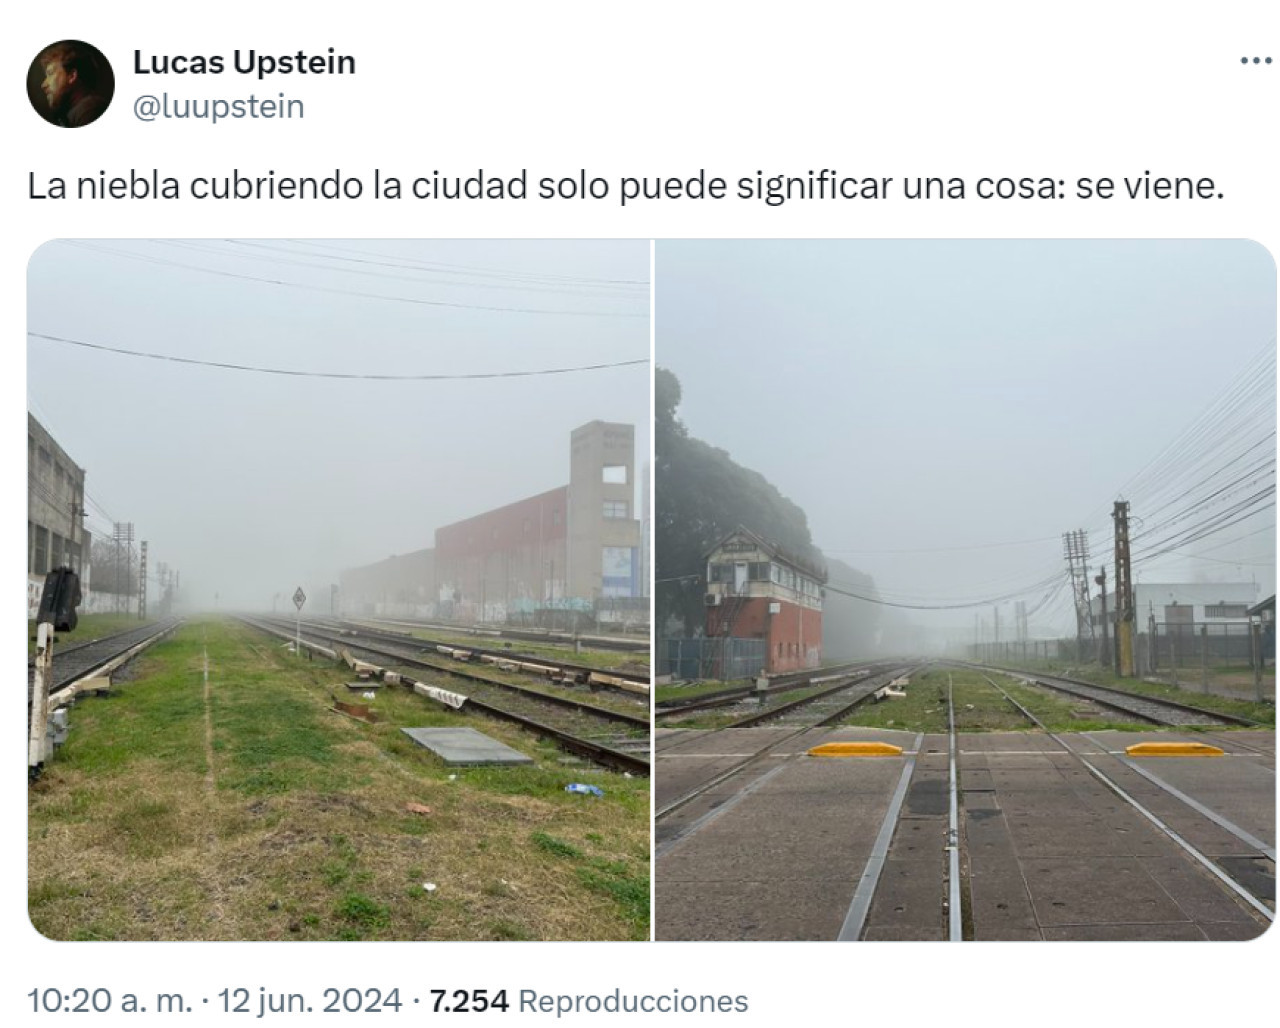 Las repercusiones en X por la neblina en Buenos Aires.